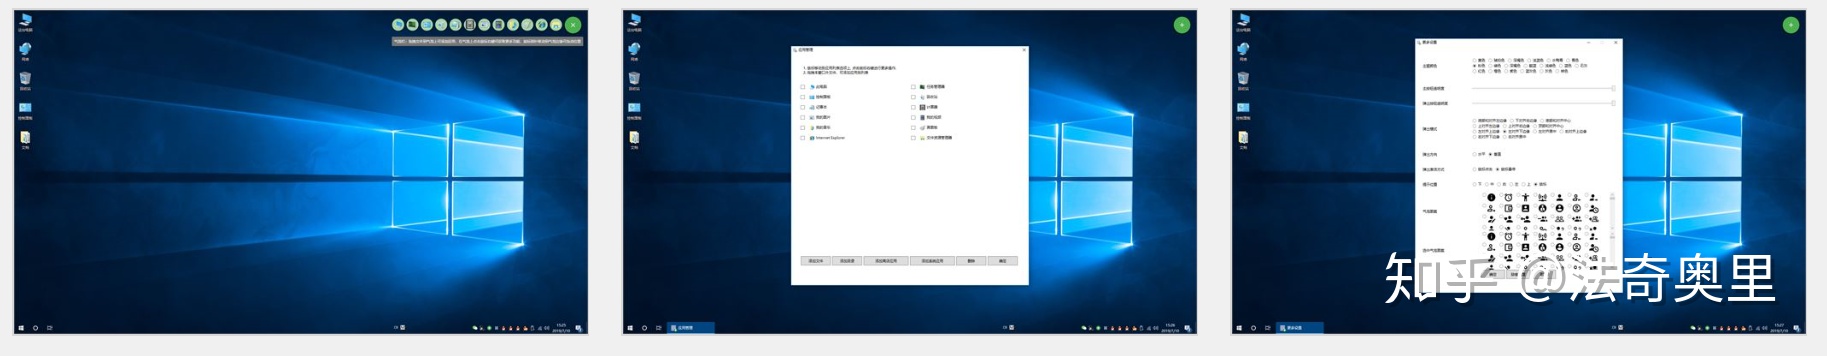 Microsoft storeñ-163.jpg